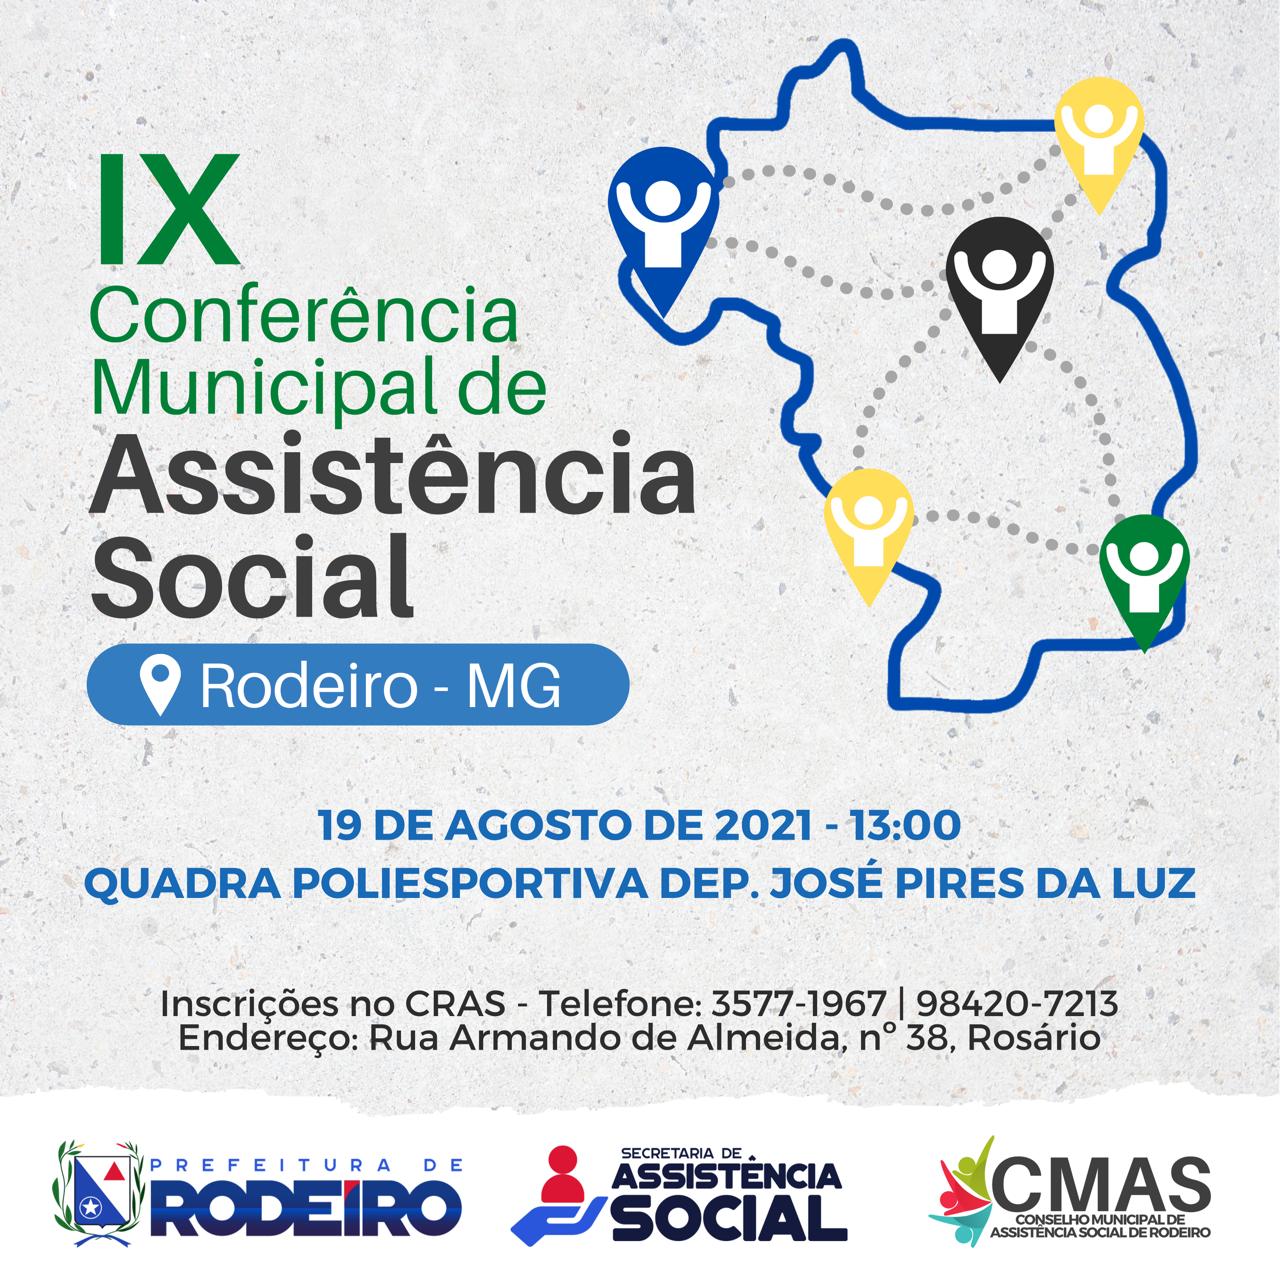 IX Conferência Municipal de Assistência Social 